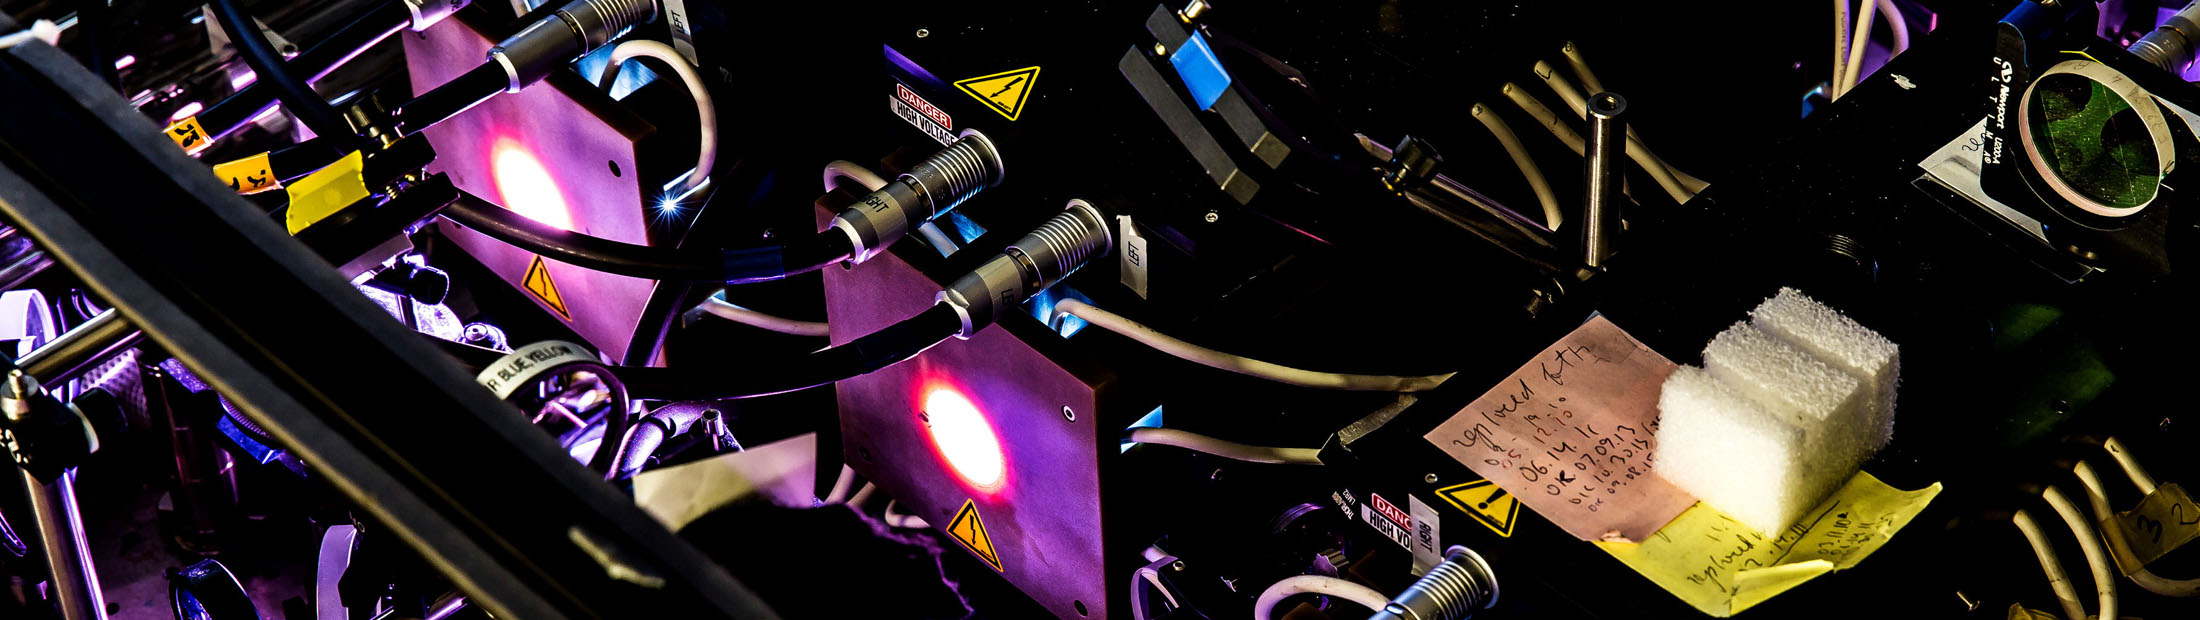 Image of Hercules laser